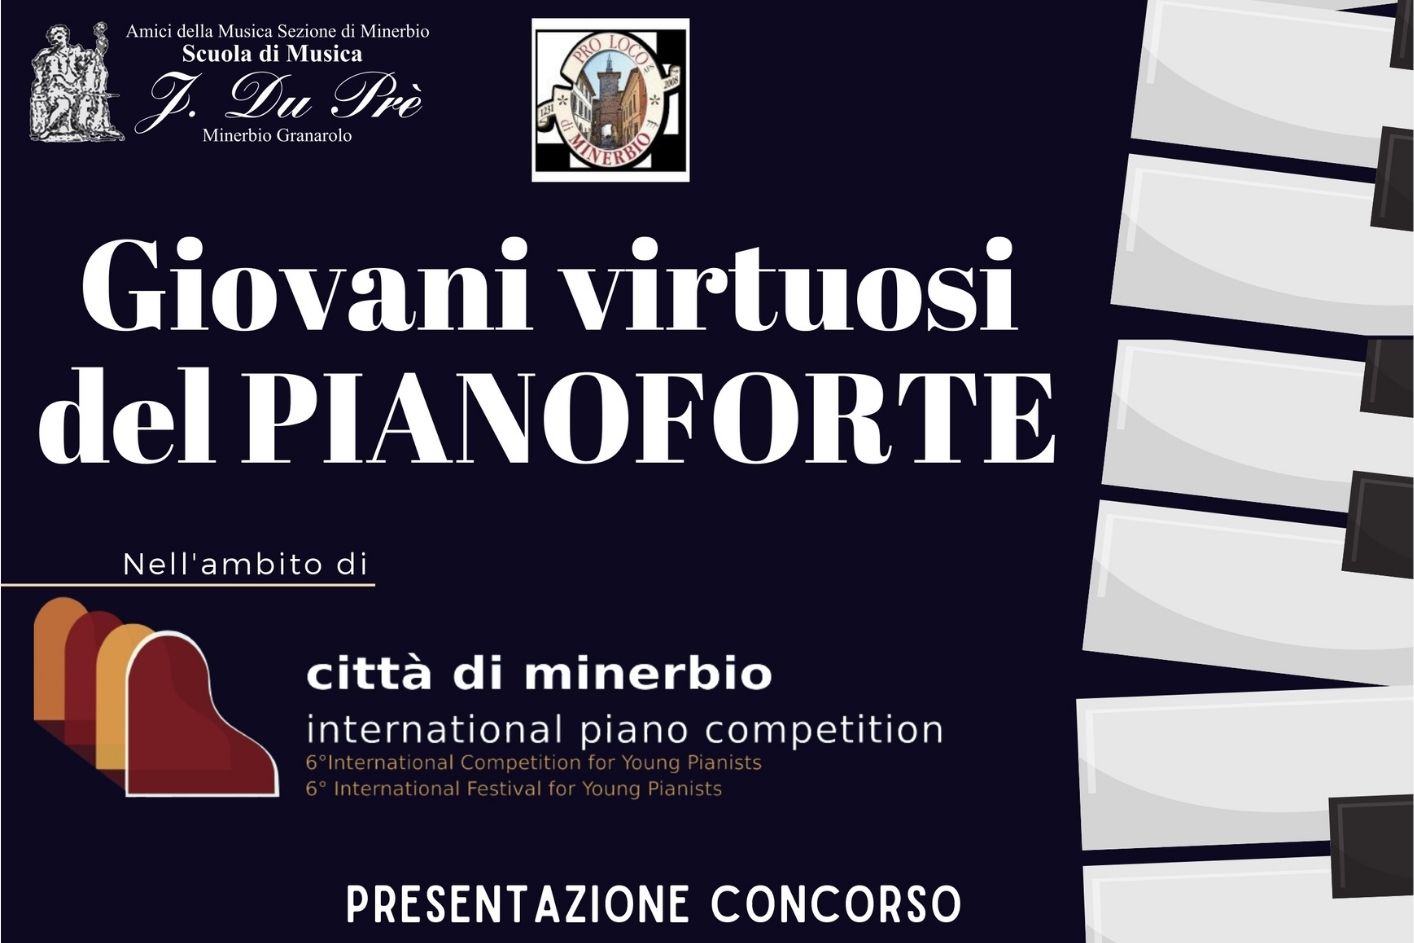 Presentazione del concorso pianistico internazionale "Città di Minerbio" a Malabergo